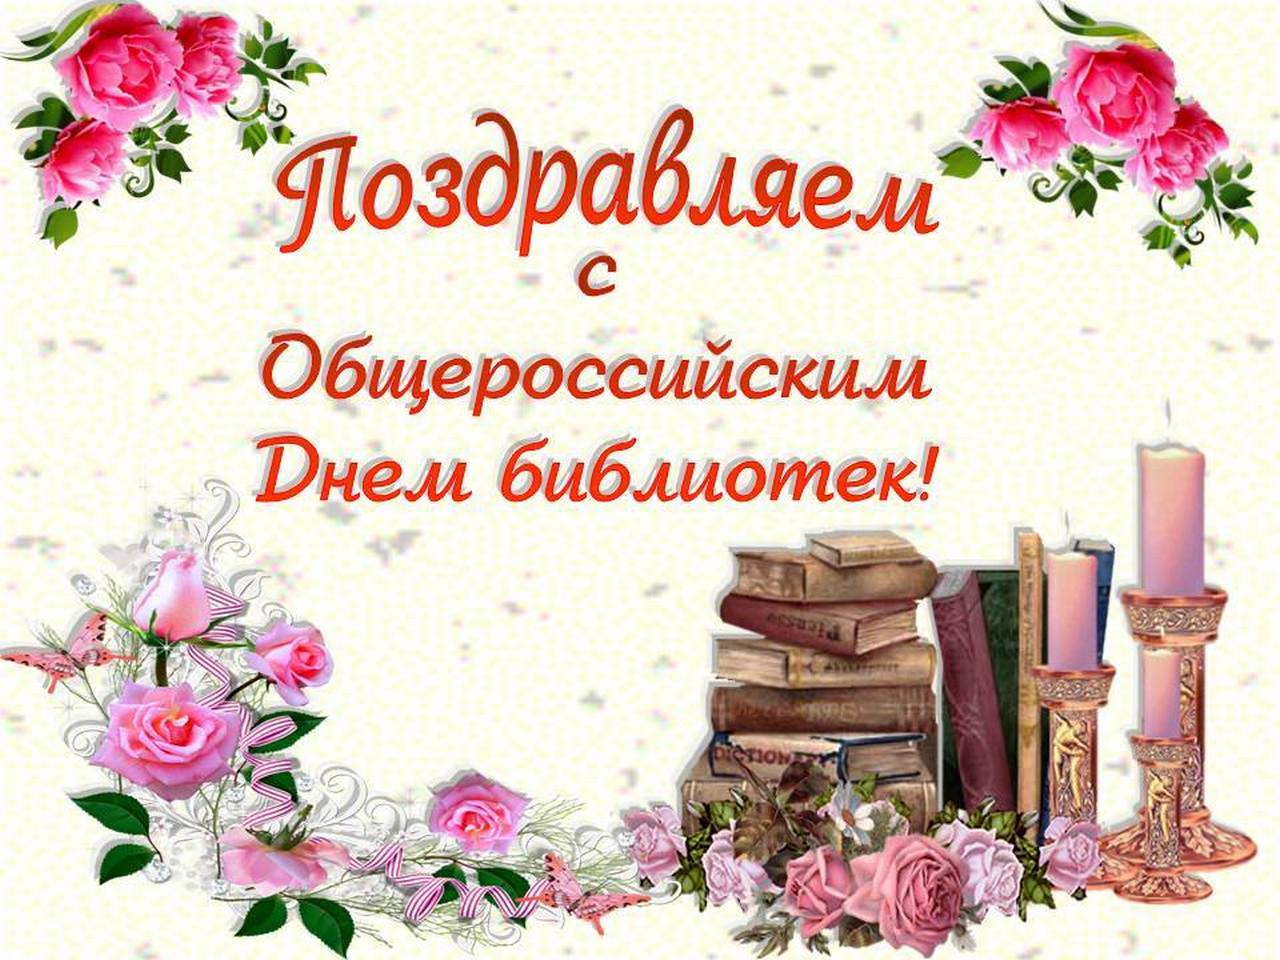 Когда день библиотекаря. С днем библиотекаря поздравления. Поздравление с днем библиотек. День библиотекаря. Всероссийский день библиотек поздравление.